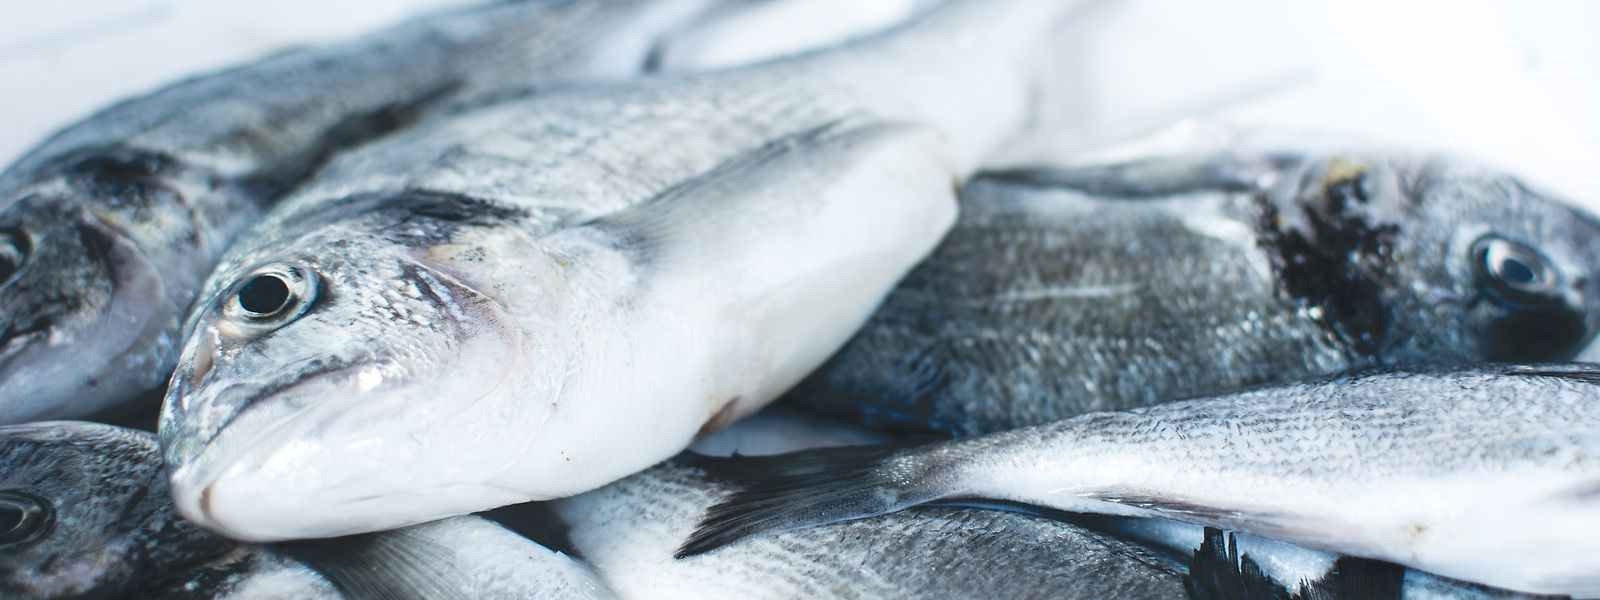 A Europa consome quase o dobro do peixe que produz e 12% do total produzido no mundo